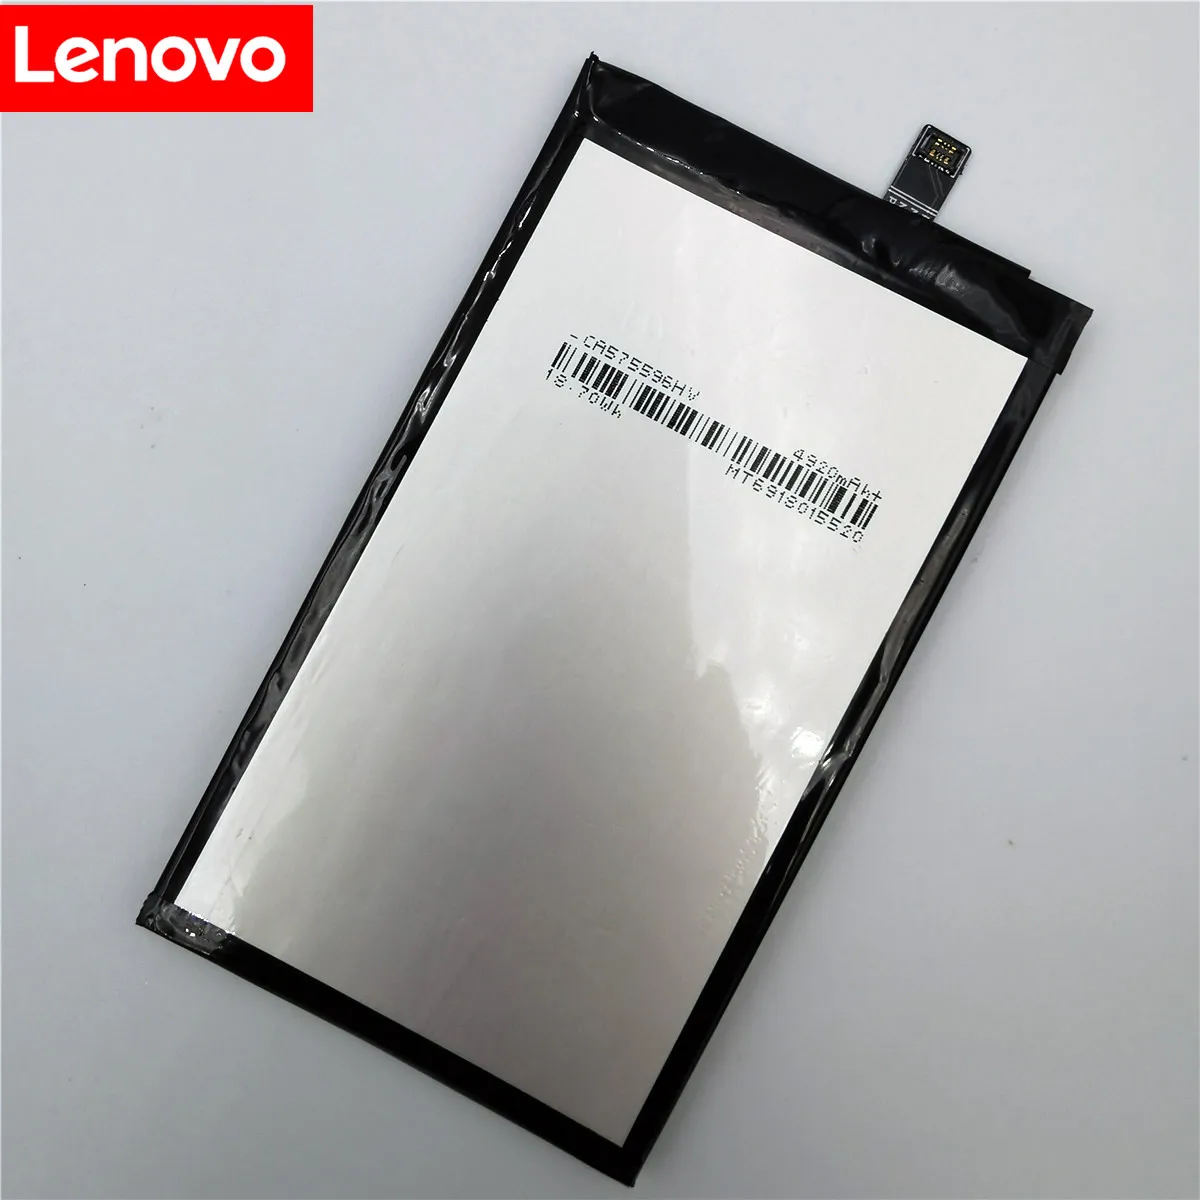 100% מקורי חדש באיכות גבוהה אמיתי 5000mAh BL244 סוללה Batterie על Lenovo Vibe P1 P1A42 P1C58 P1C72 - 4